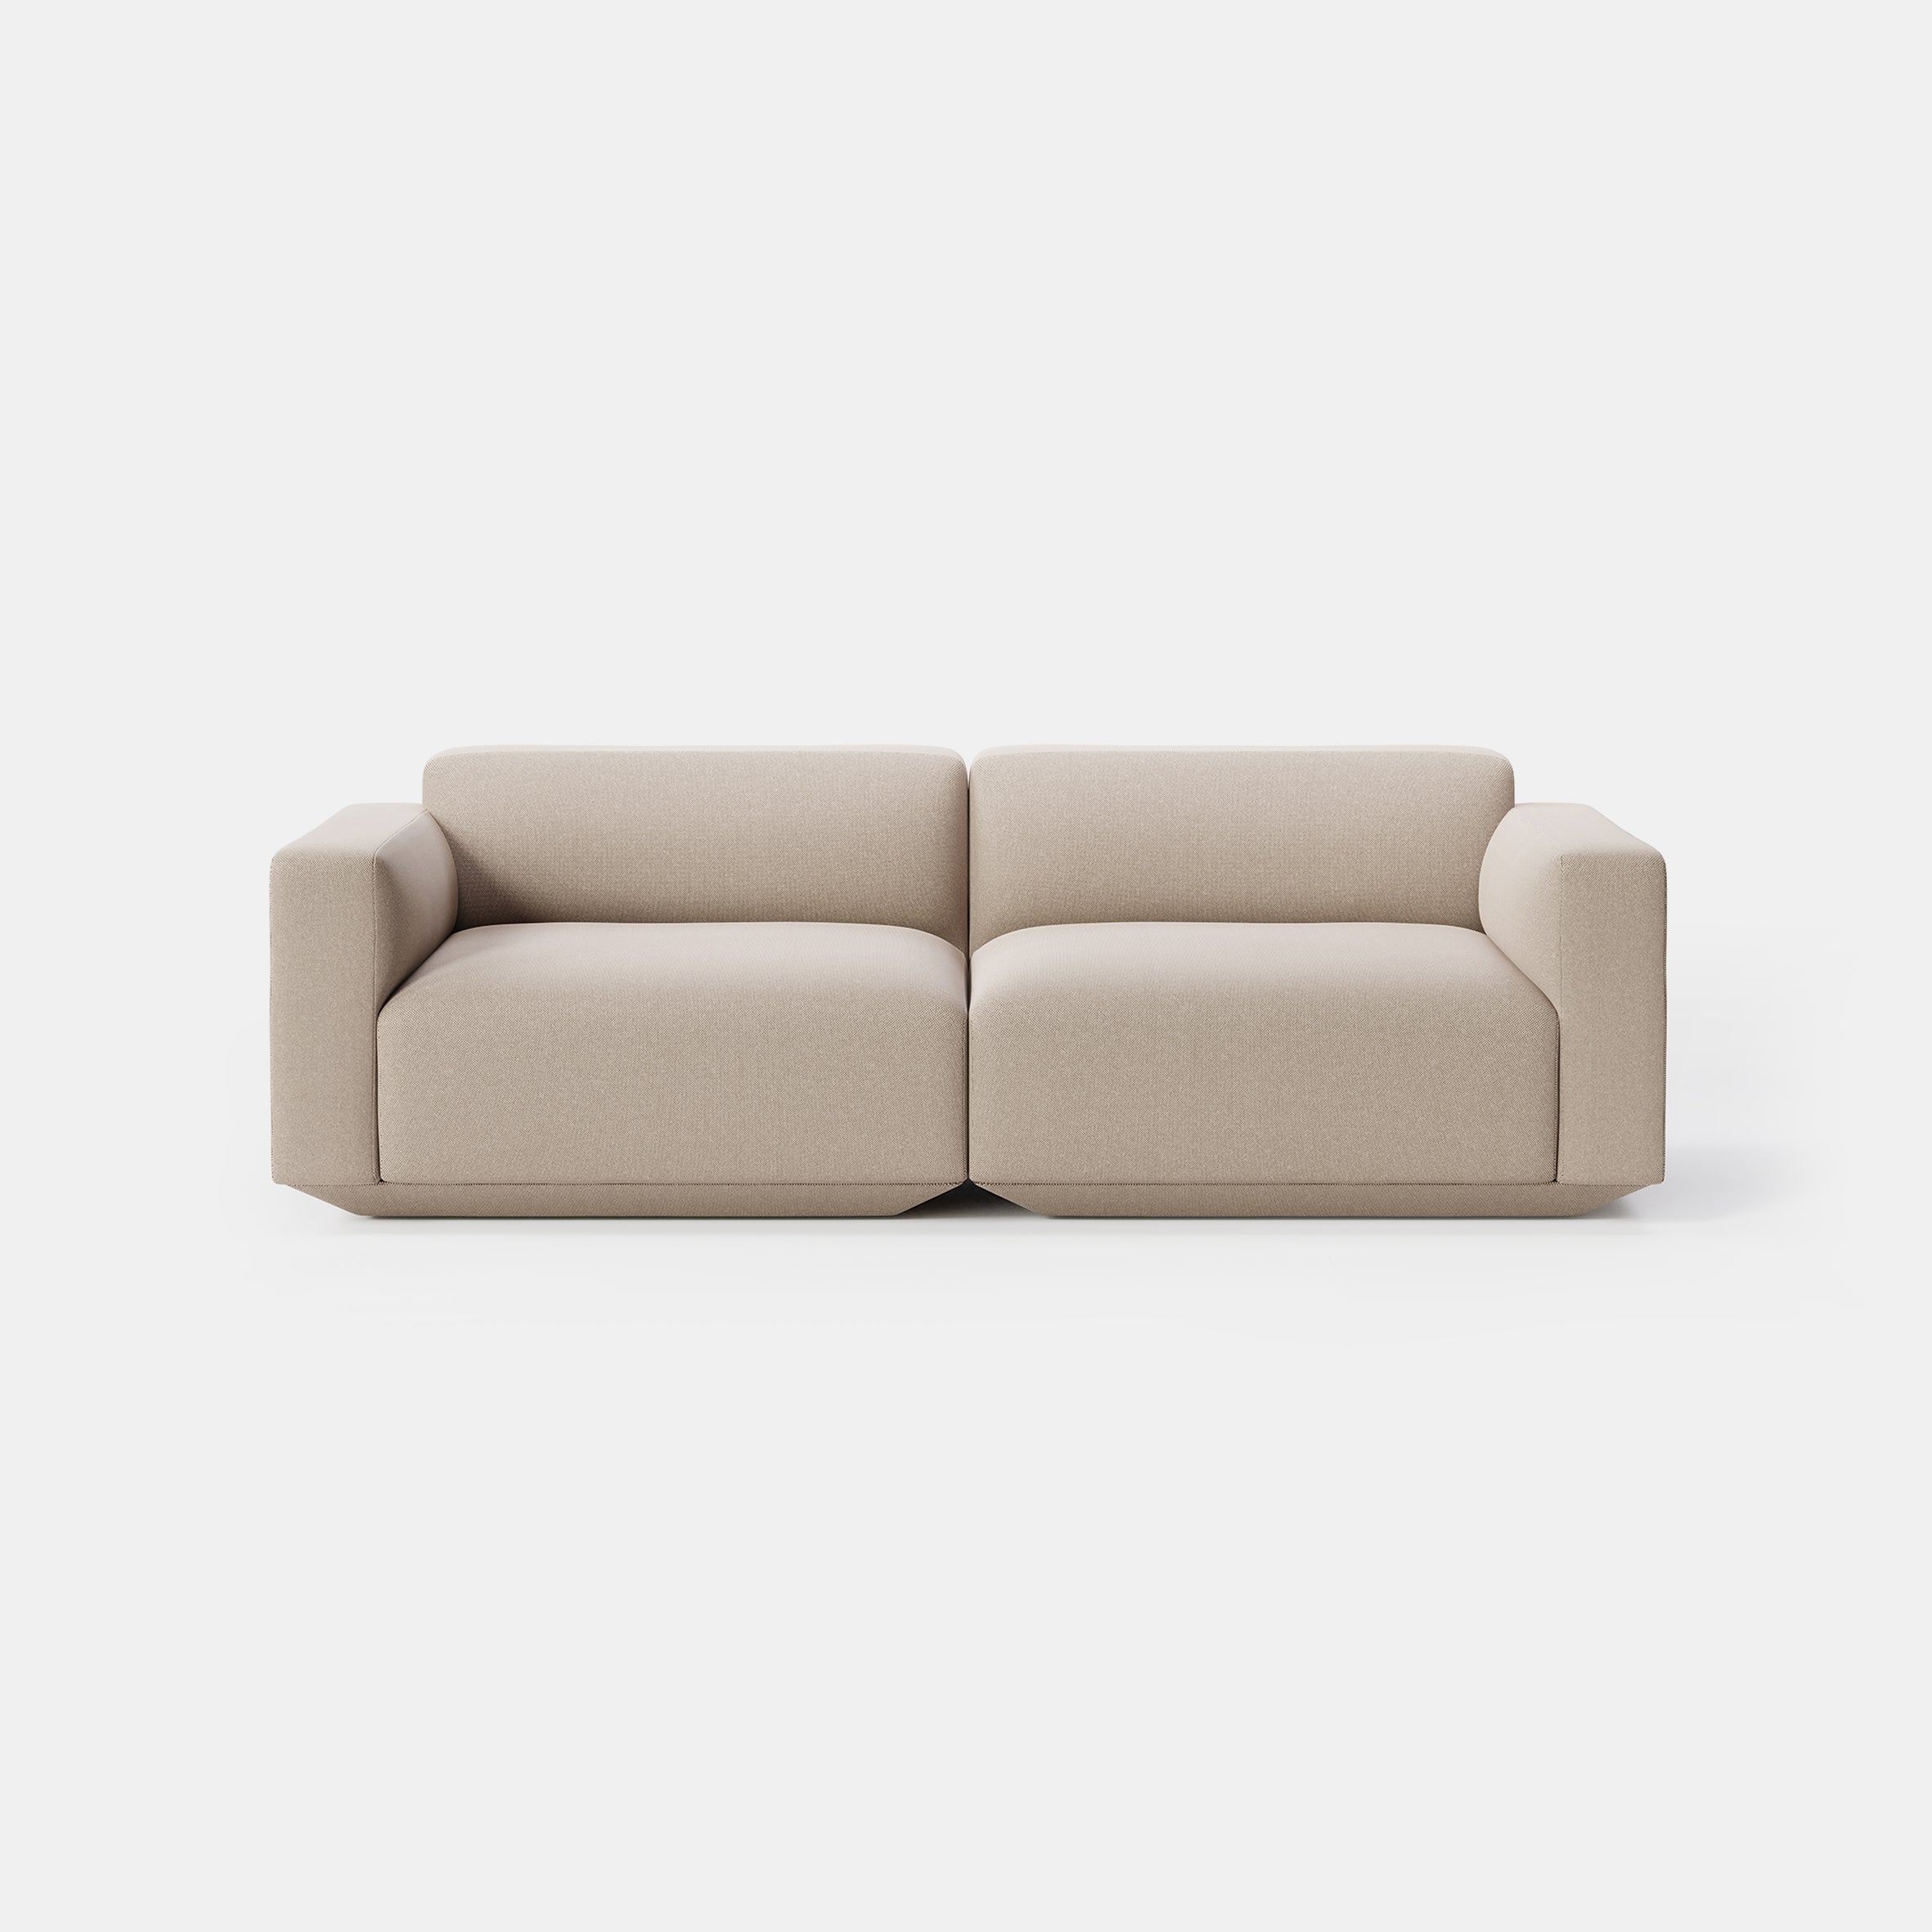 Develius Modular Sofa - 2 Seater